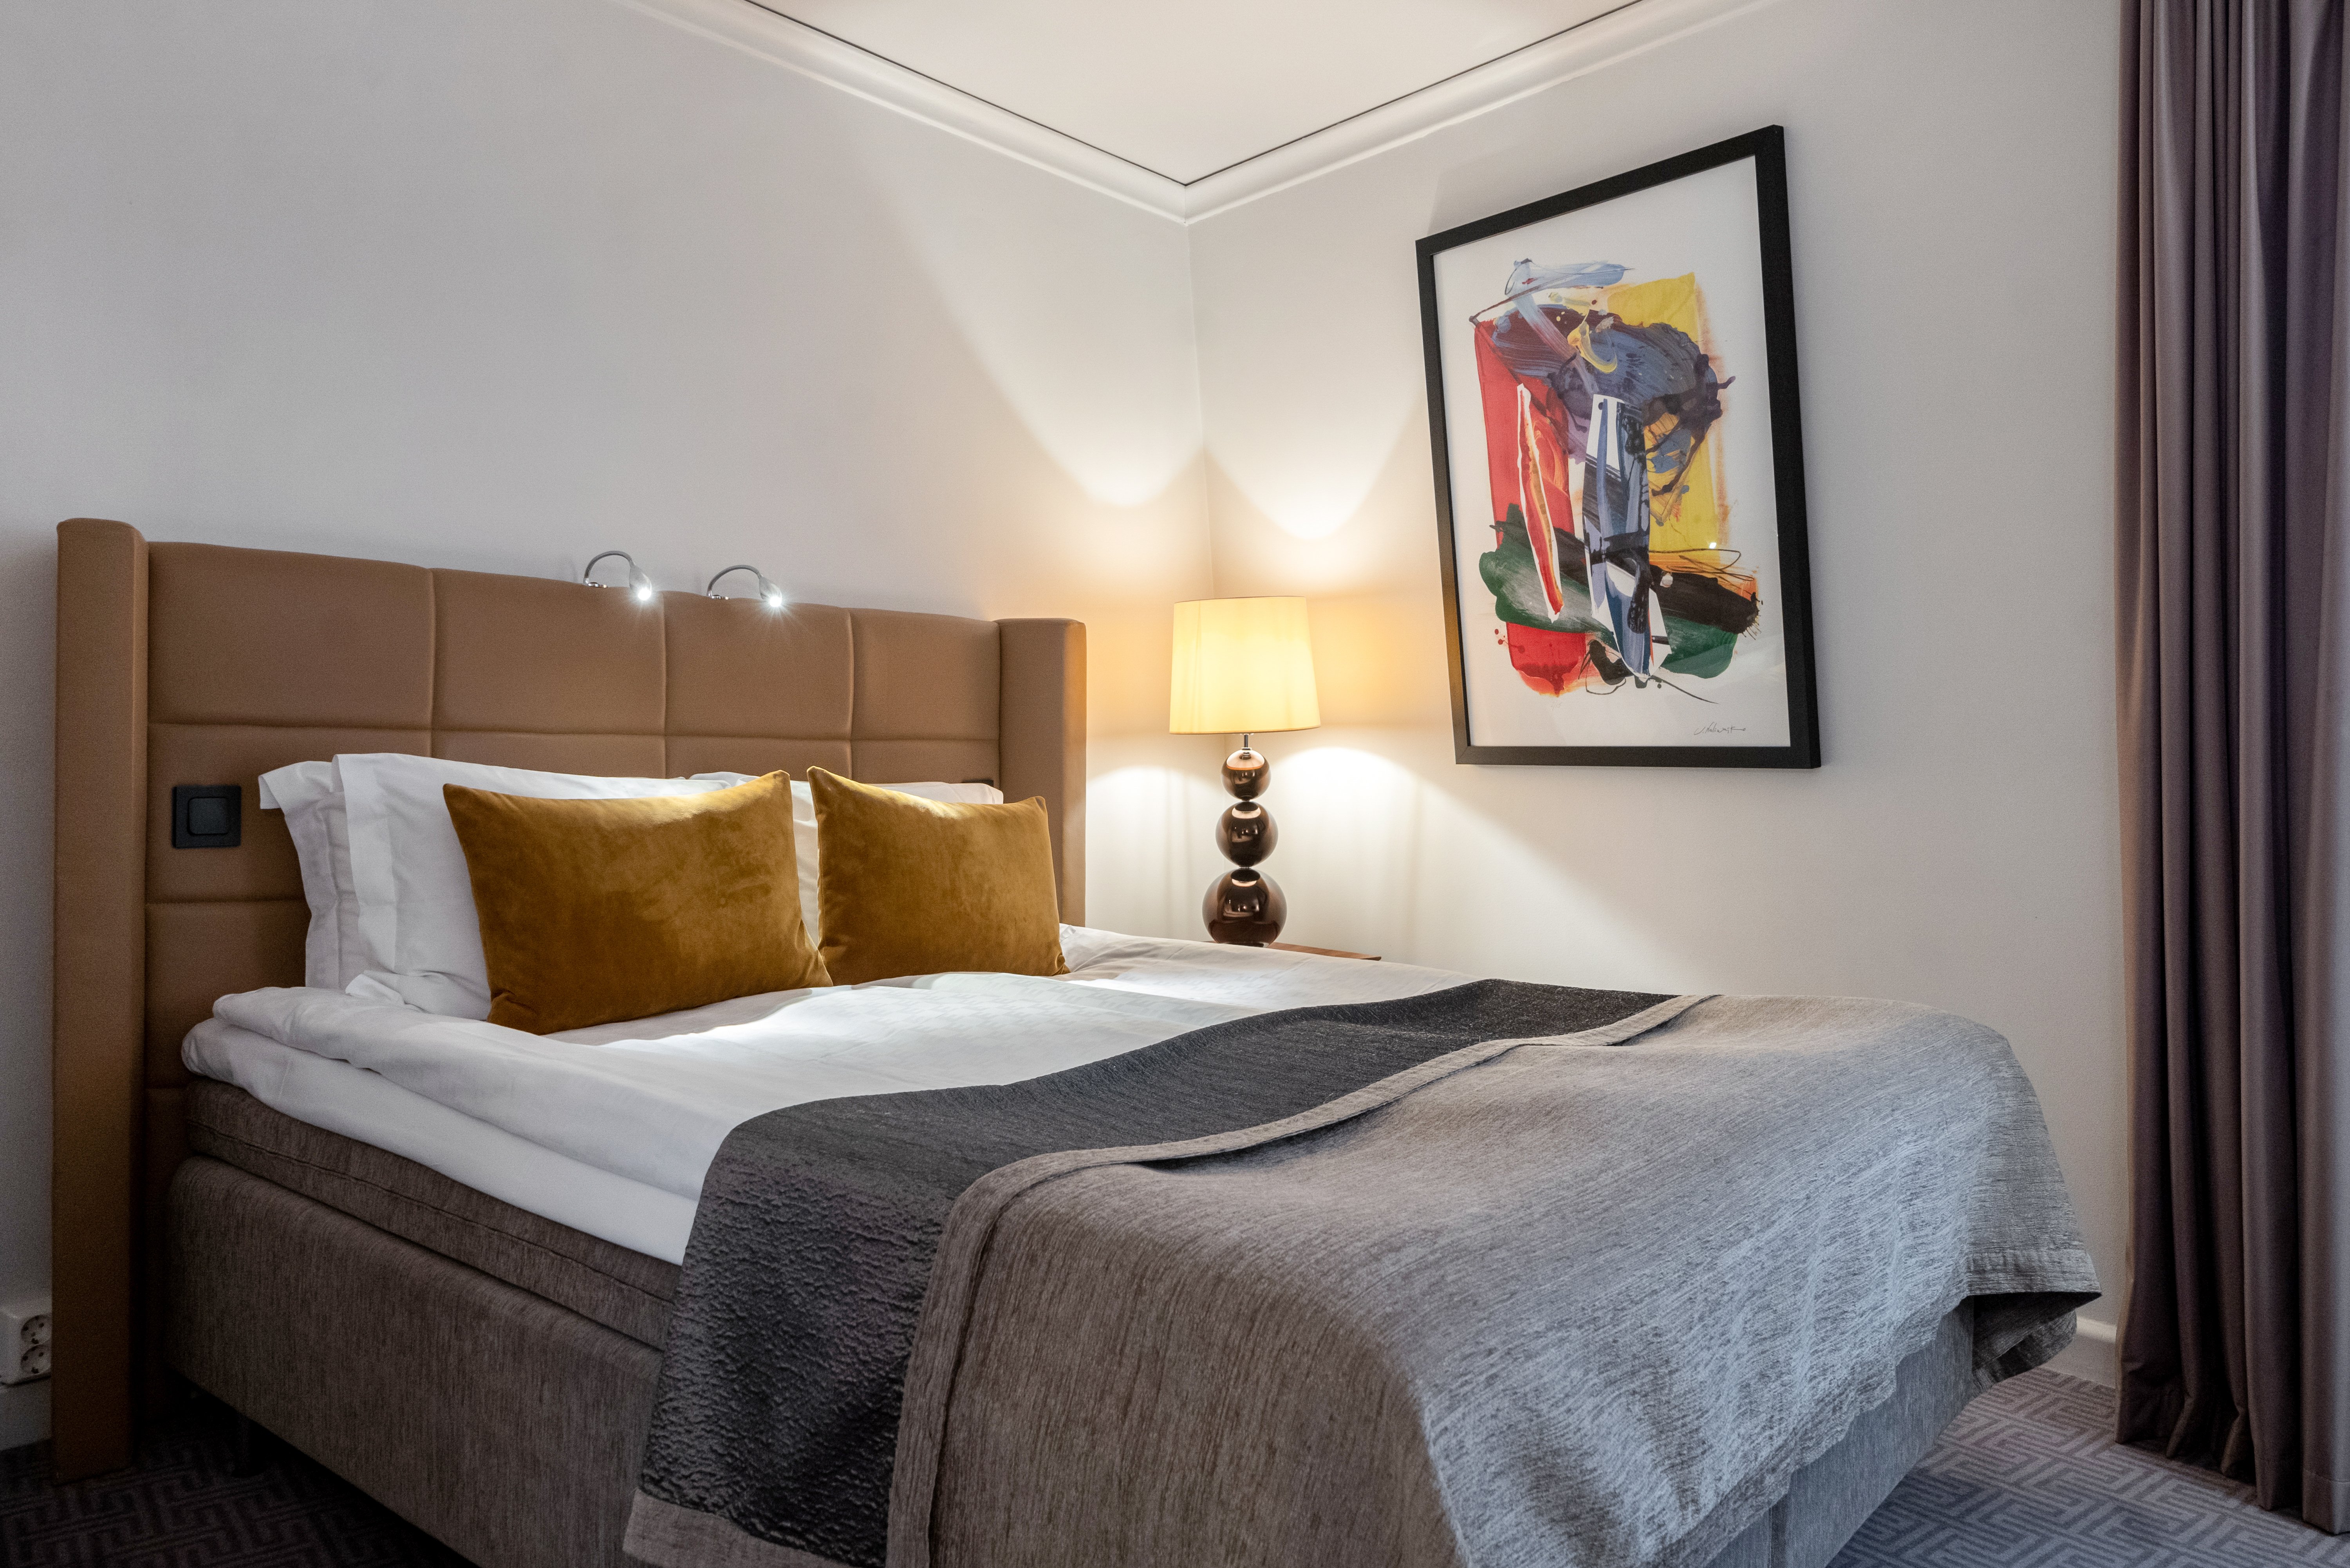 Mysigt hotellrum med dubbelsäng med gul sänggavel, lampor och tavla